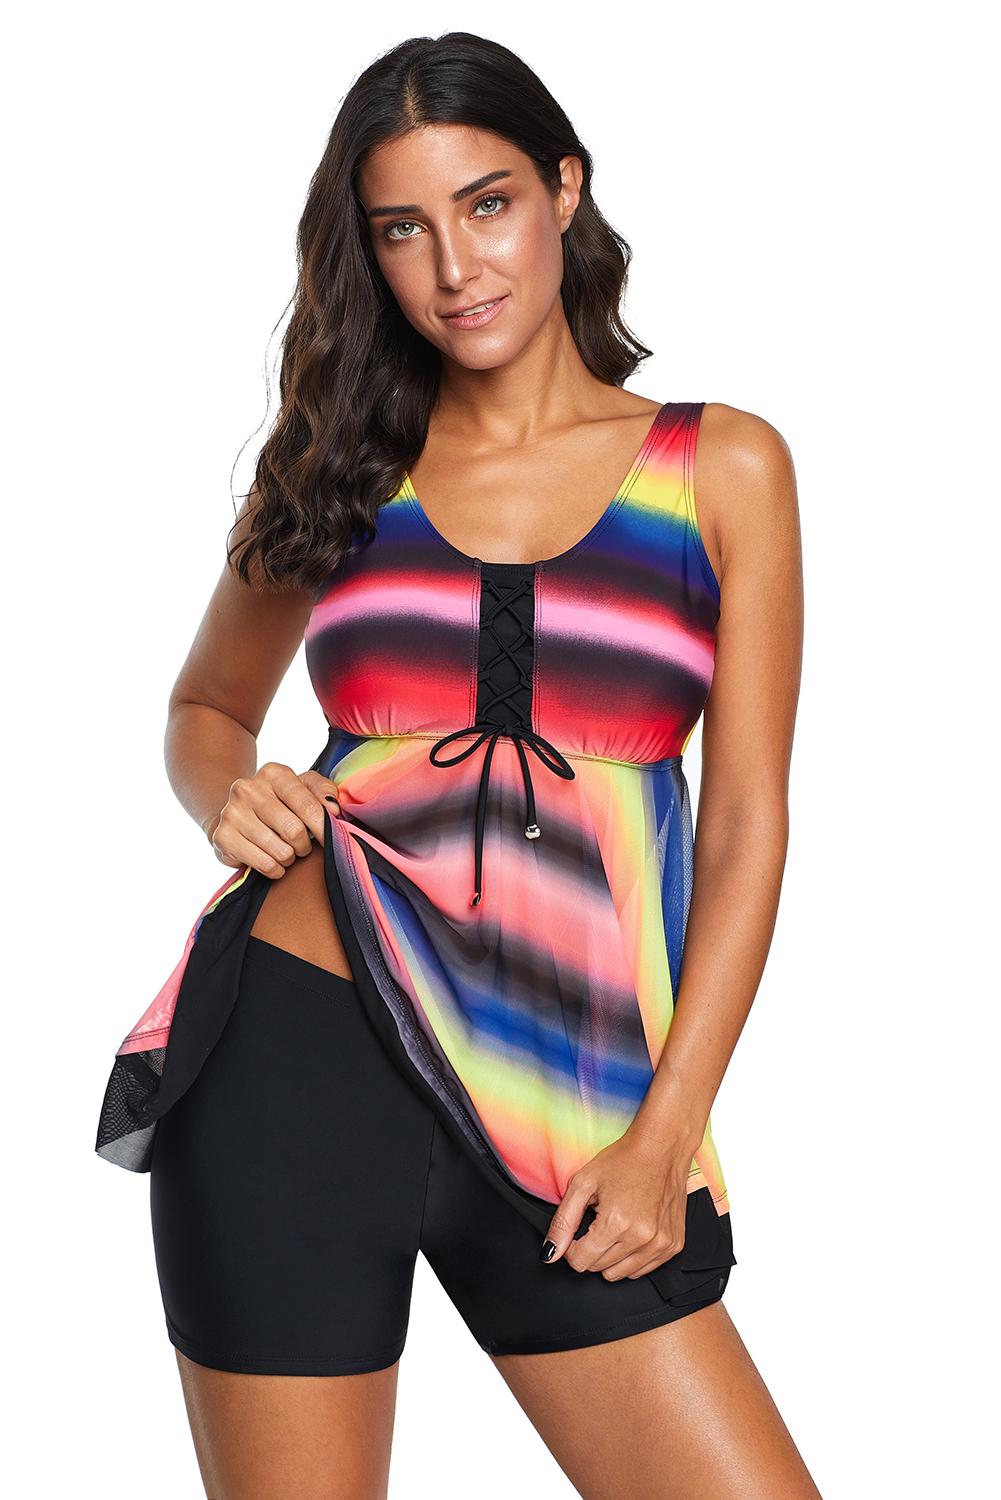 Cali Chic Women's Two Piece Swimsuit Tankini Celebrity Multicolor Tie Dye Ombre Swim Dress Swimwear for Women